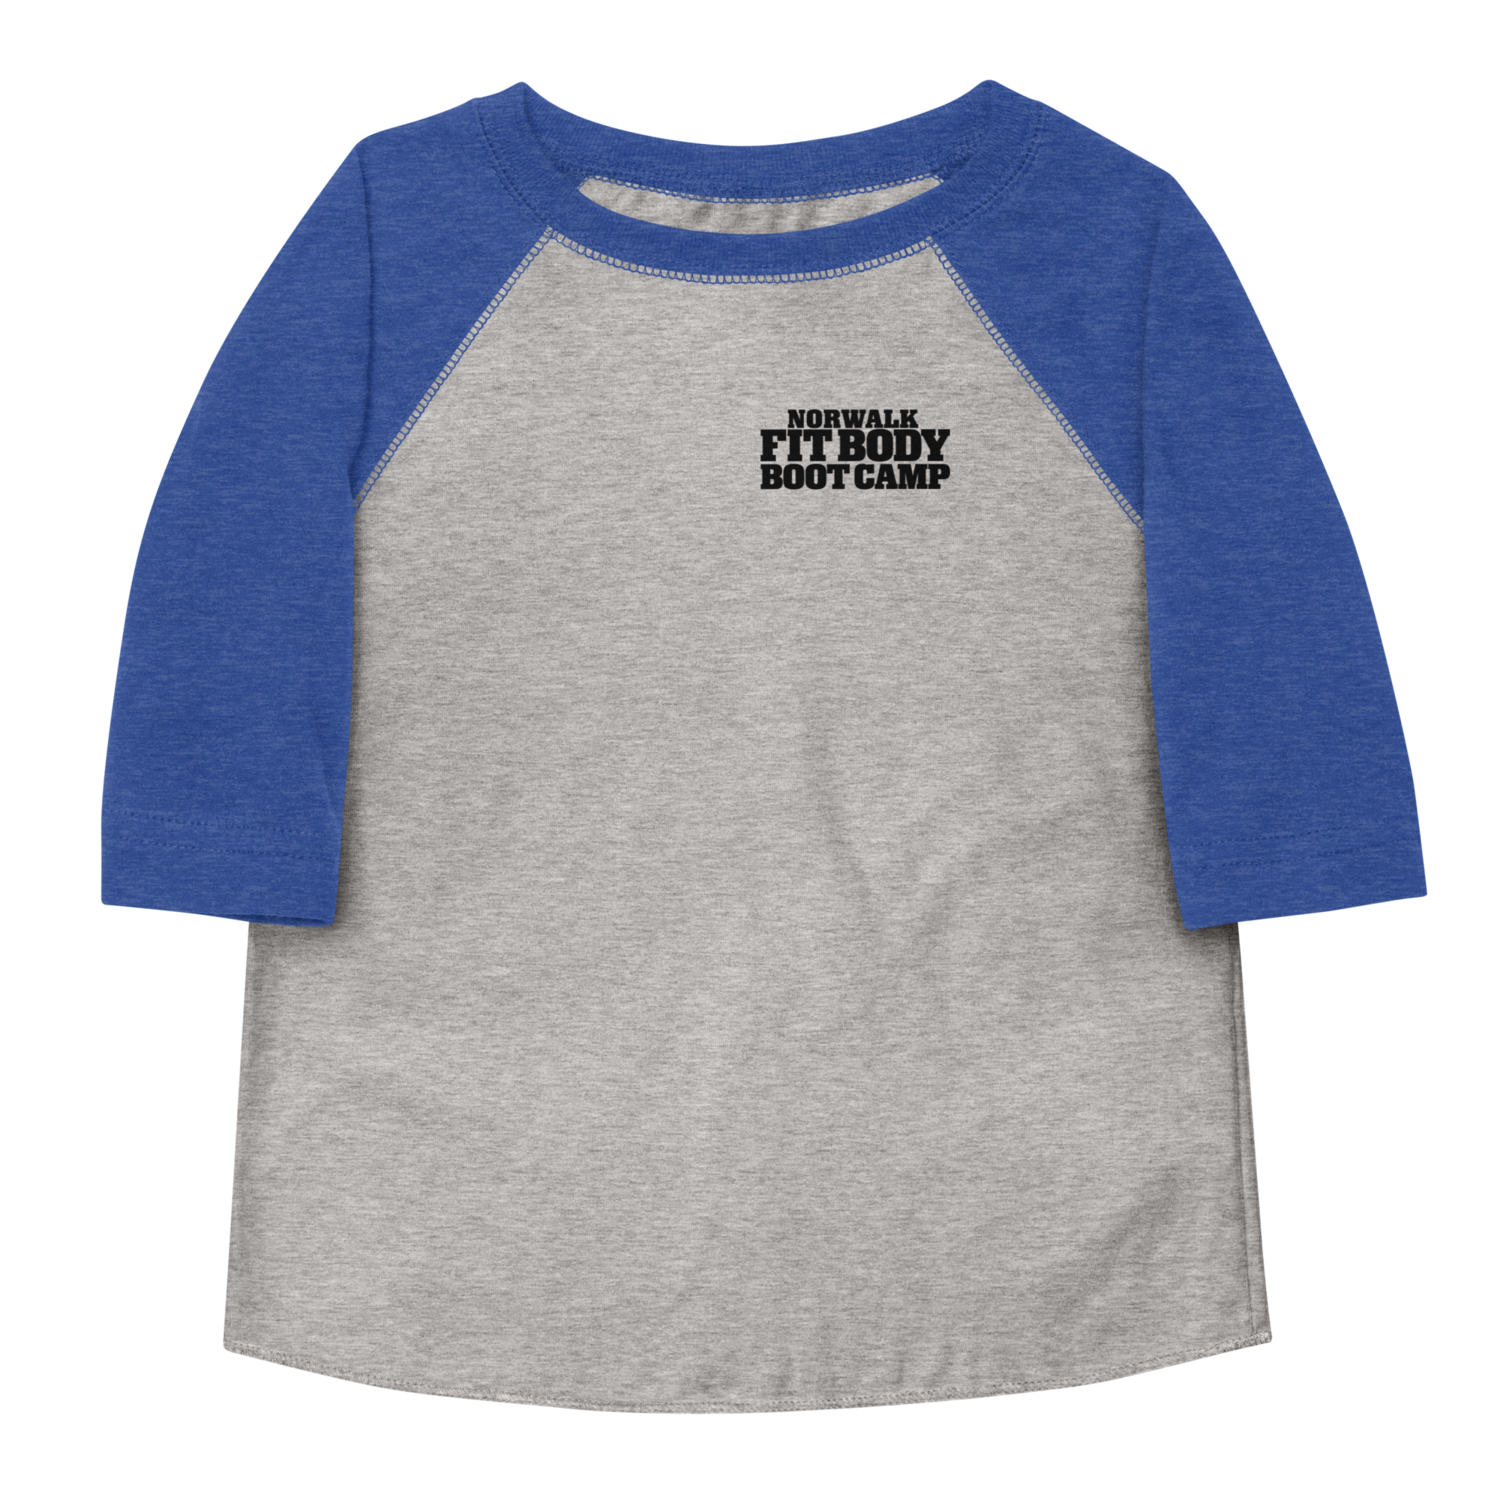 Toddler Baseball 3/4 Sleeve Baseball Shirt